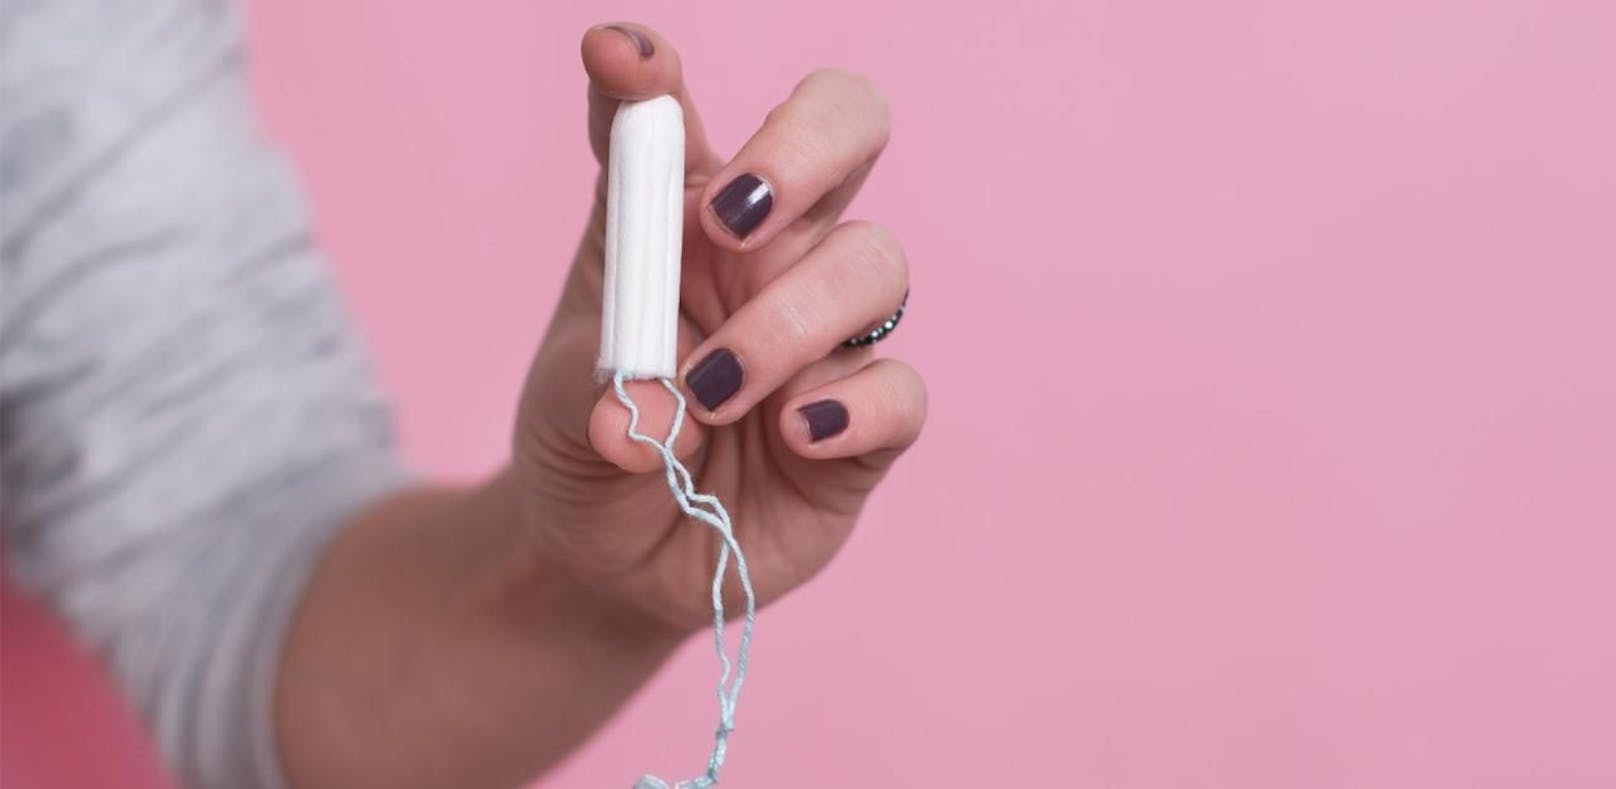 Jetzt spenden – nicht jede Frau hat Geld für Tampons